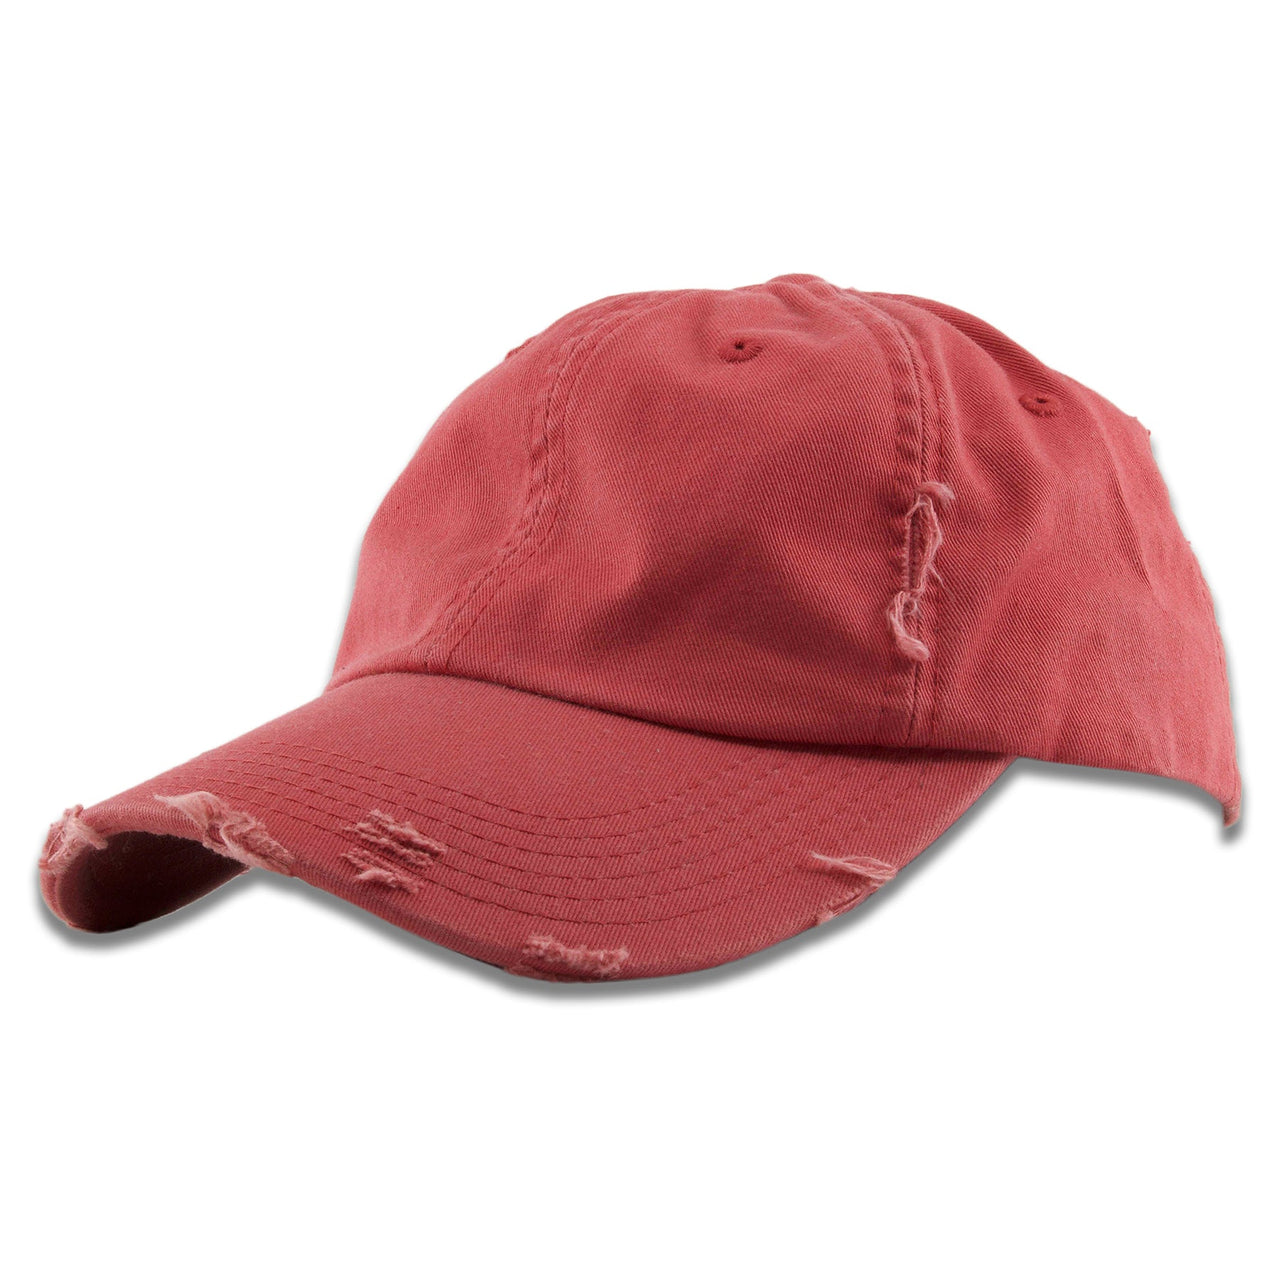 Dashing Red Blank Distressed Dad Hat